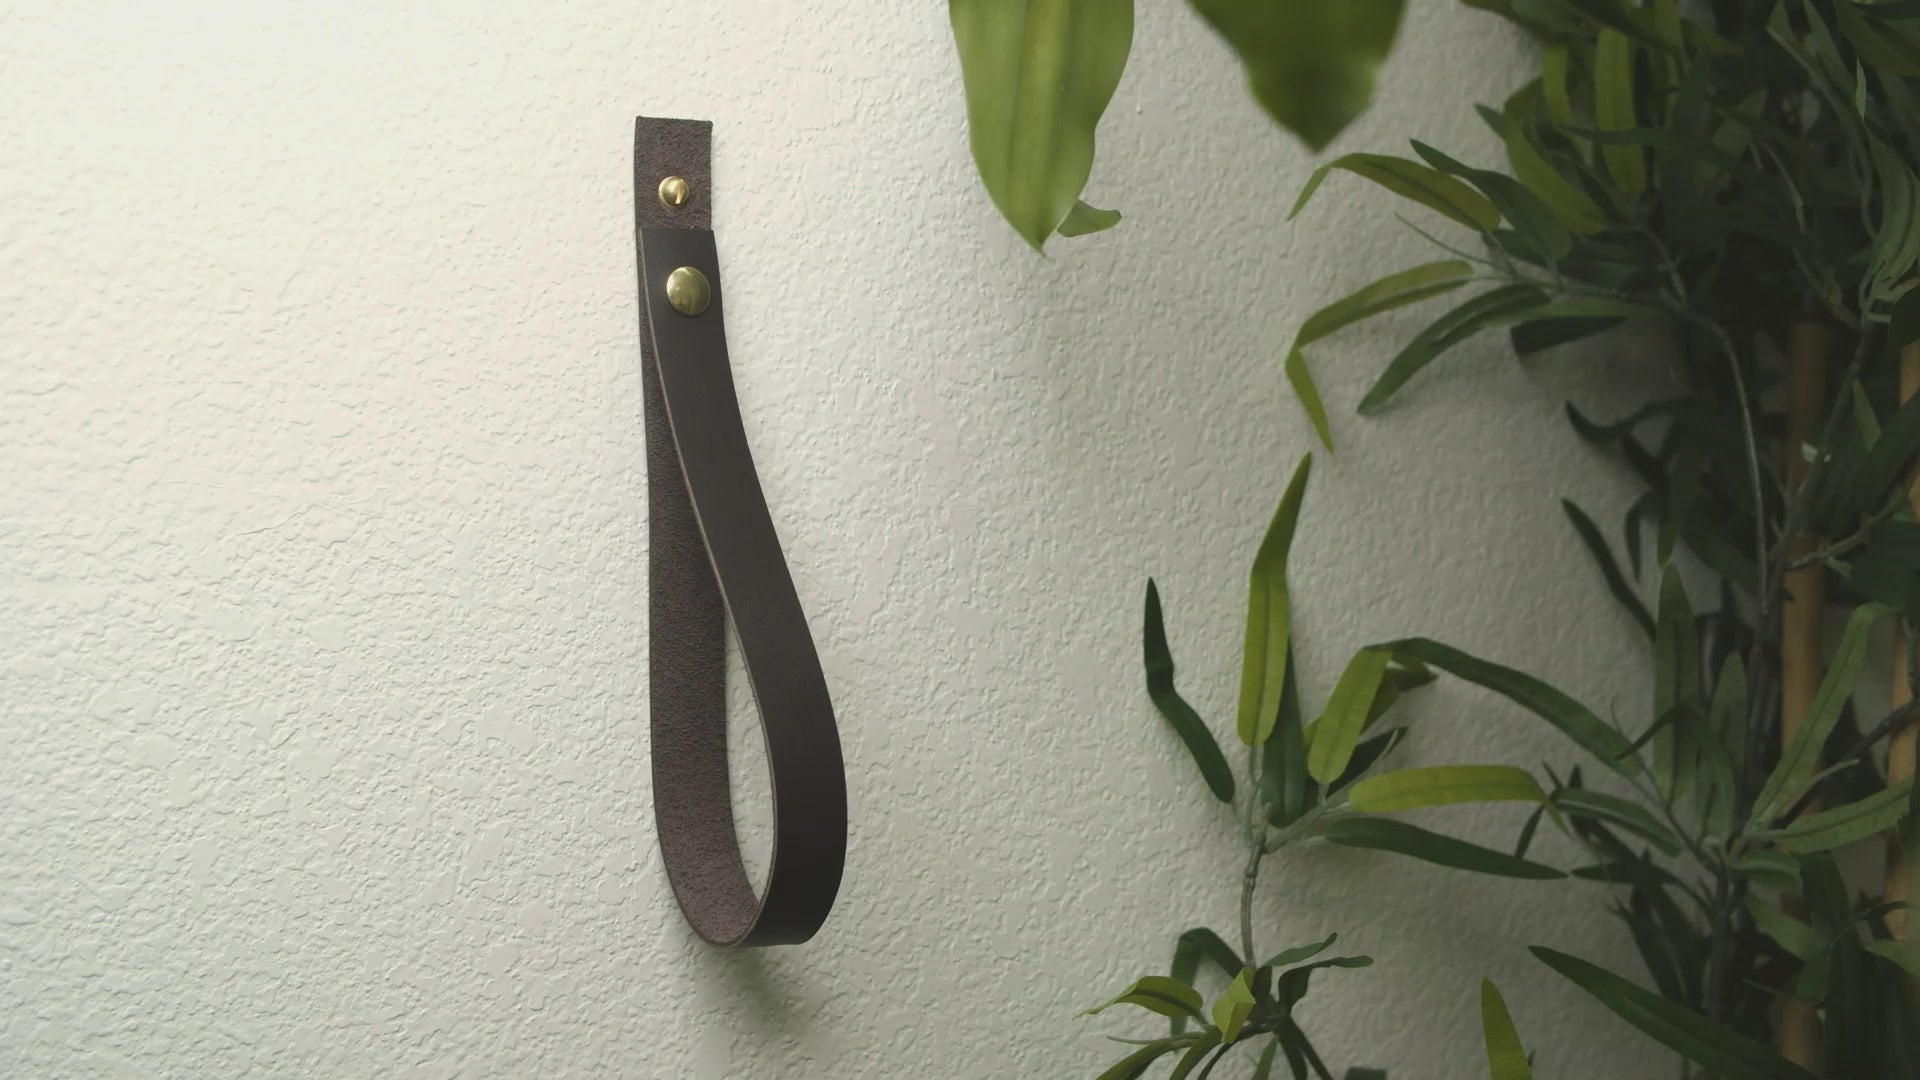 Hanging Leather Artwork Straps by Keyaiira